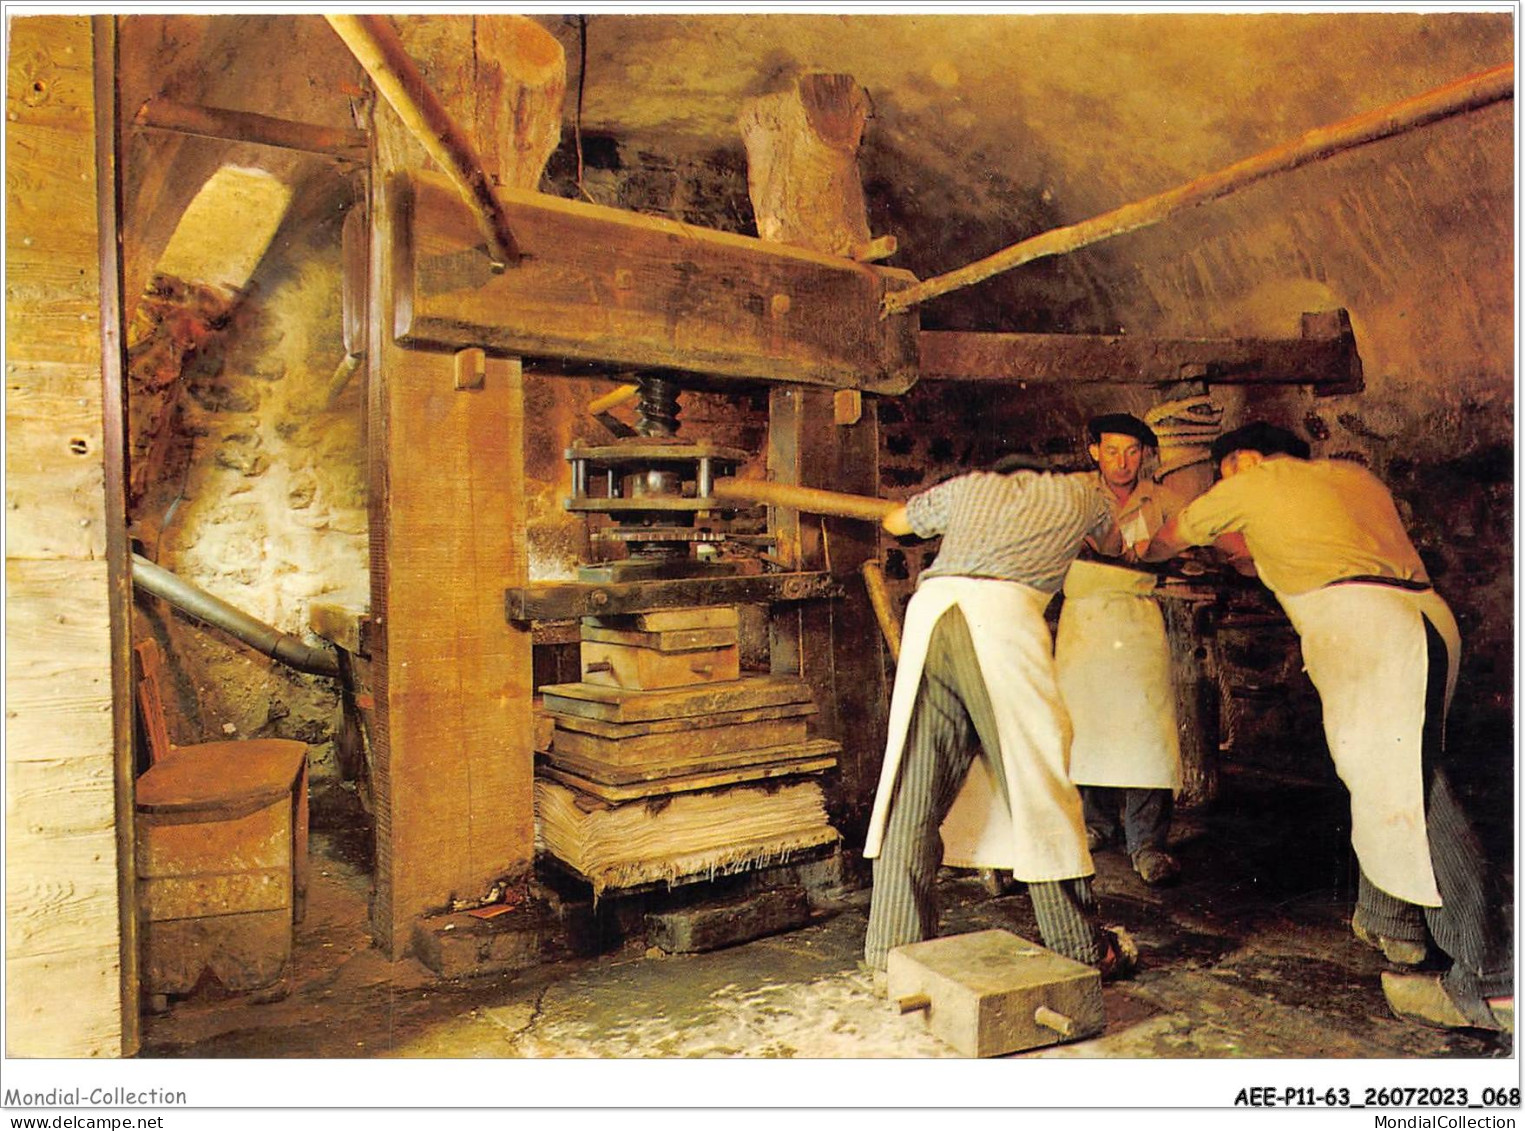 AEEP11-63-0887 - Musée Historique Du Papier - Moulin Richard De Bas - AMBERT - Le Pressage Des Feuilles Blanches  - Ambert